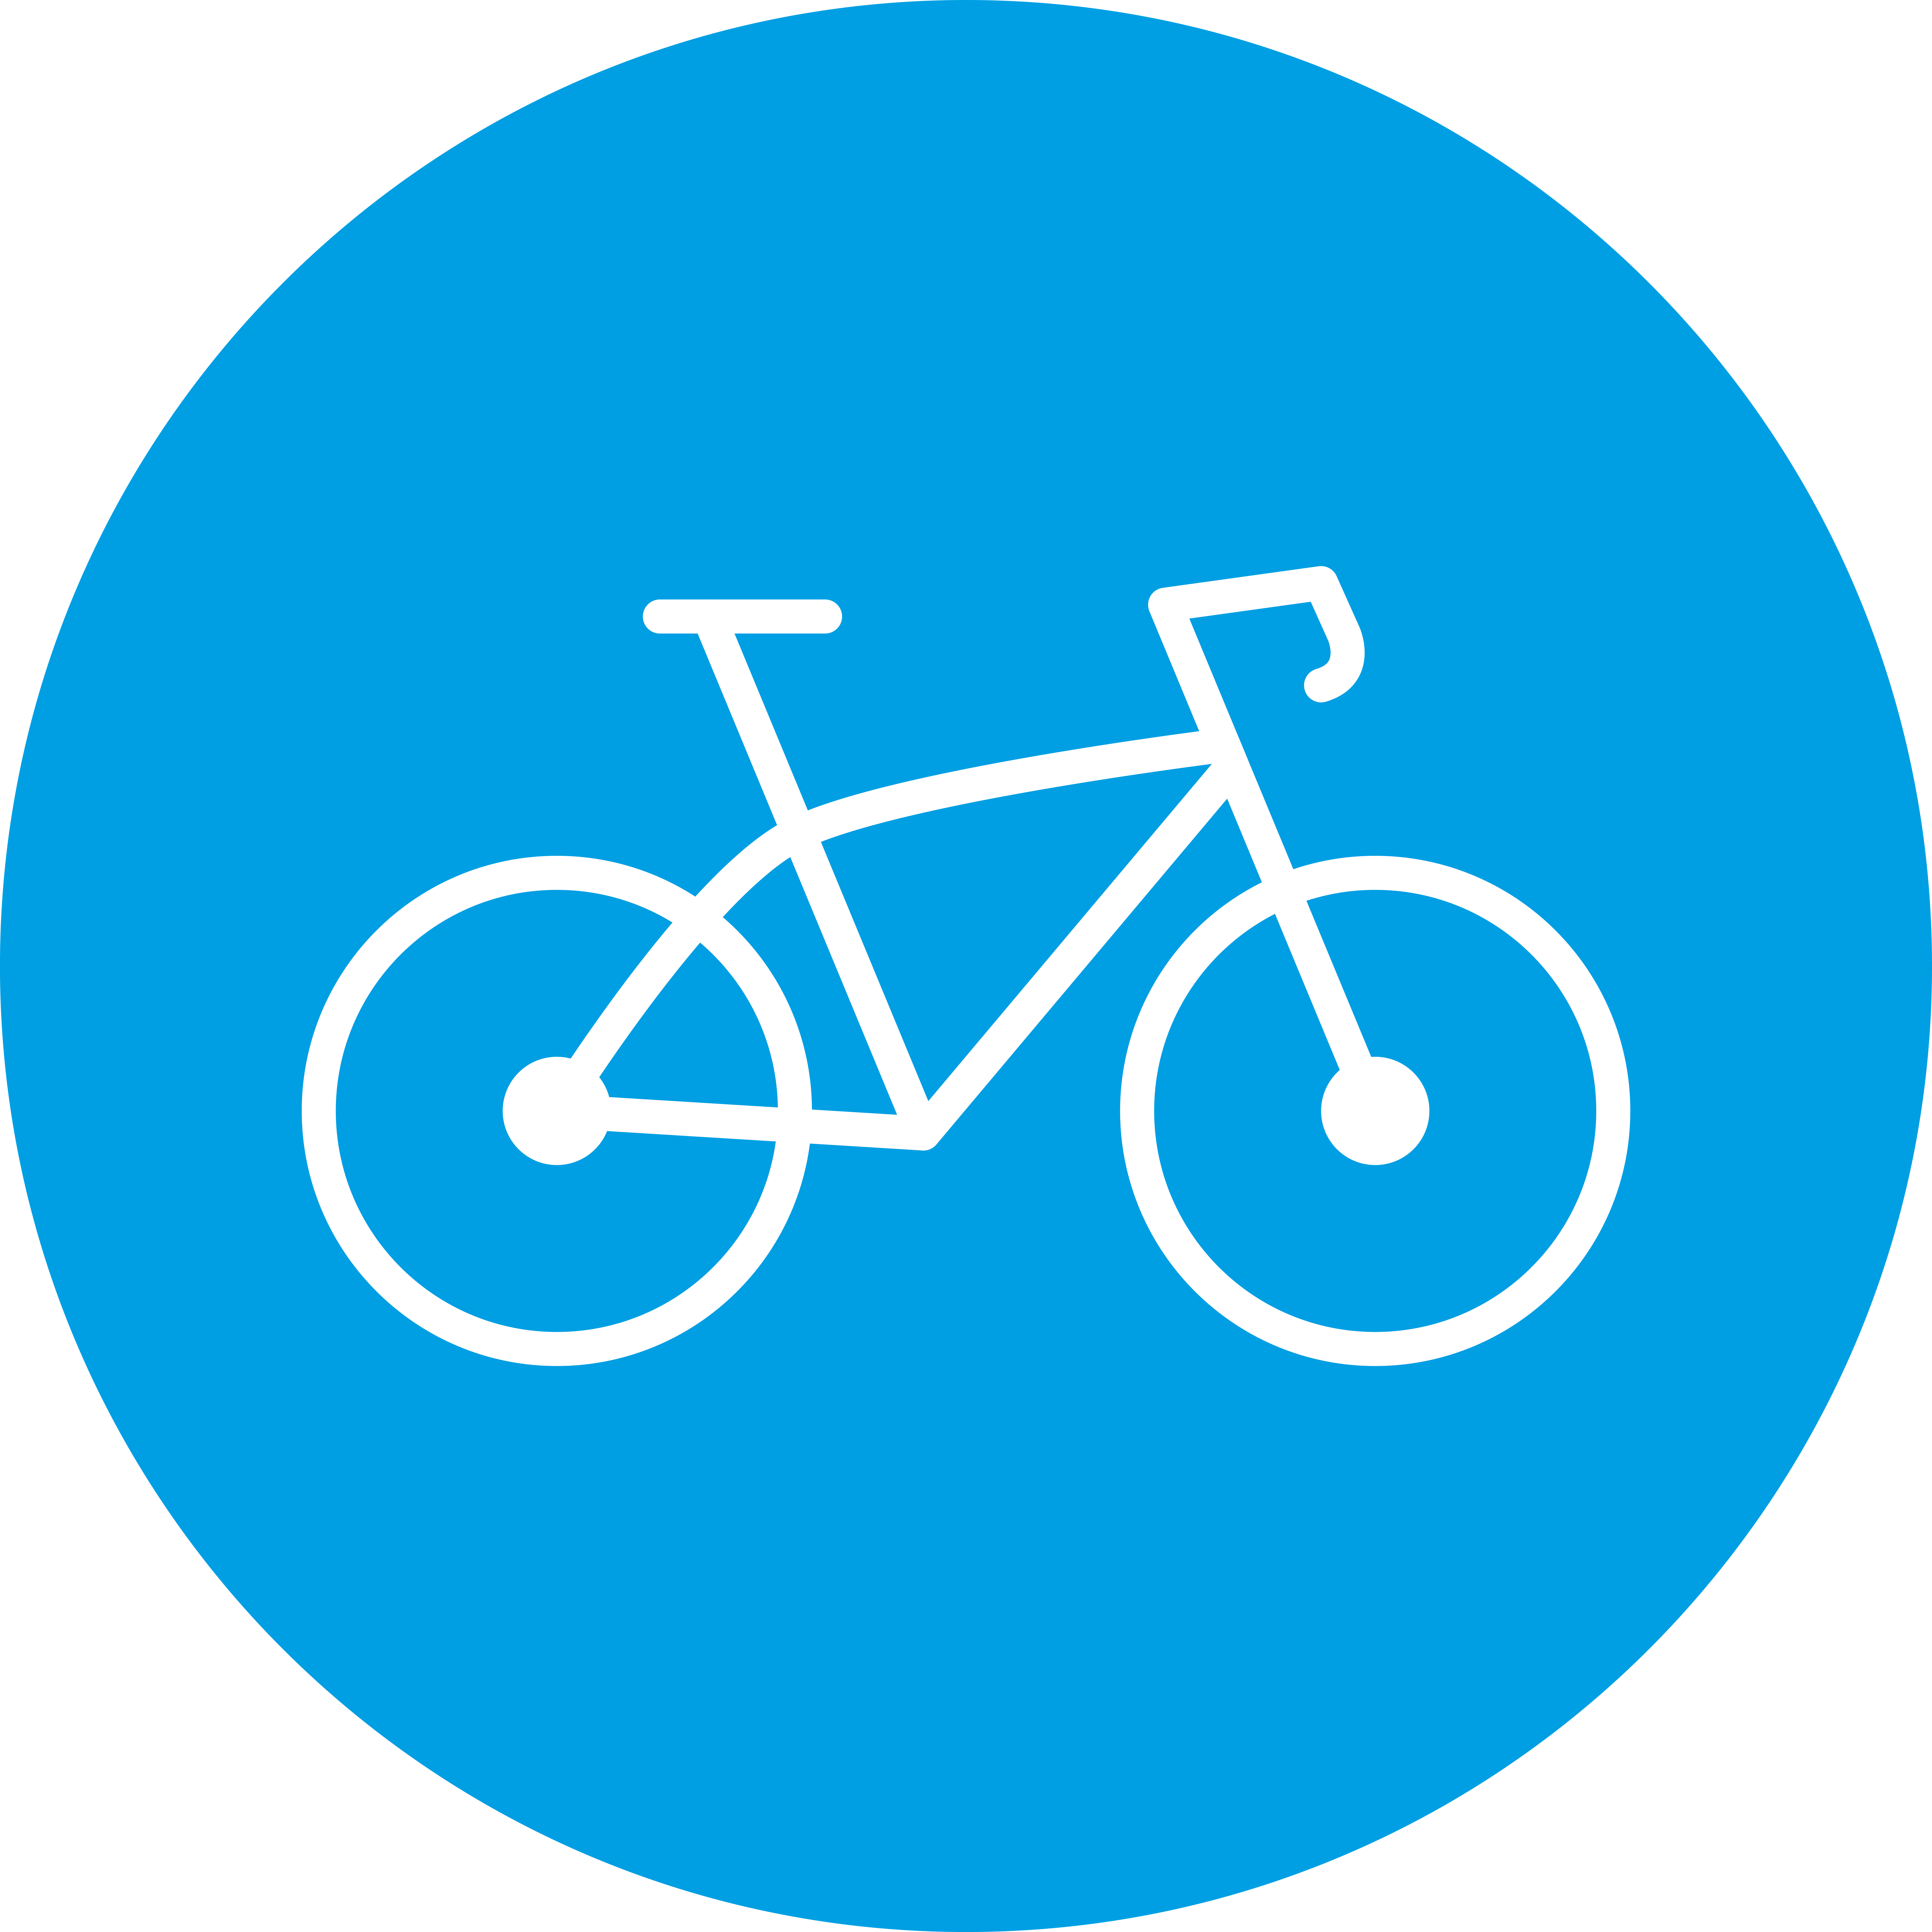 Bicicletta da lavoro (leasing di biciclette elettriche)